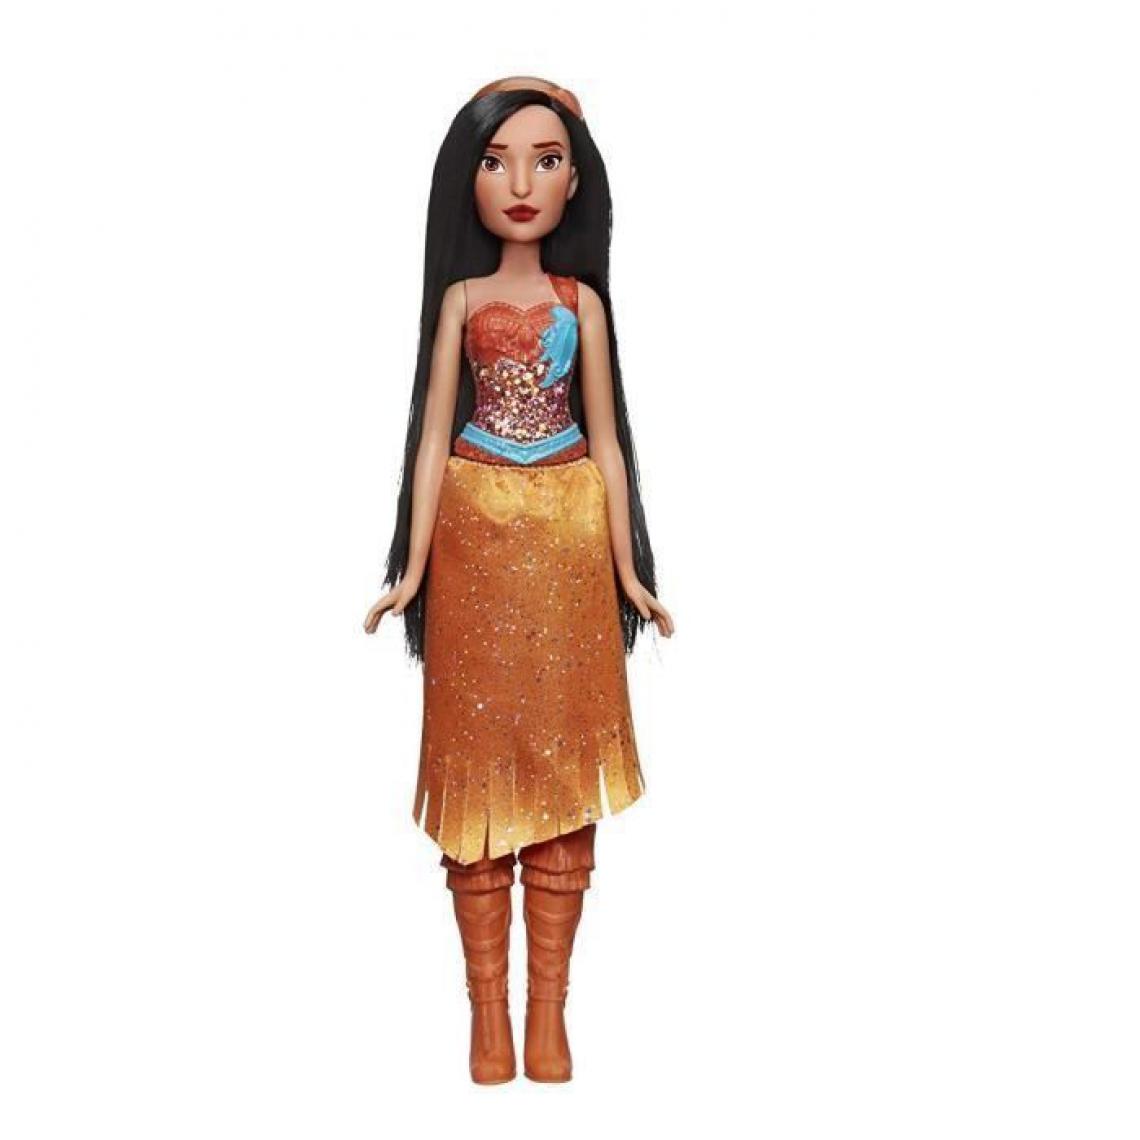 Disney Princesses - DISNEY PRINCESSES - Pocahontas - Poupee Poussiere dEtoiles 30cm - Poupées